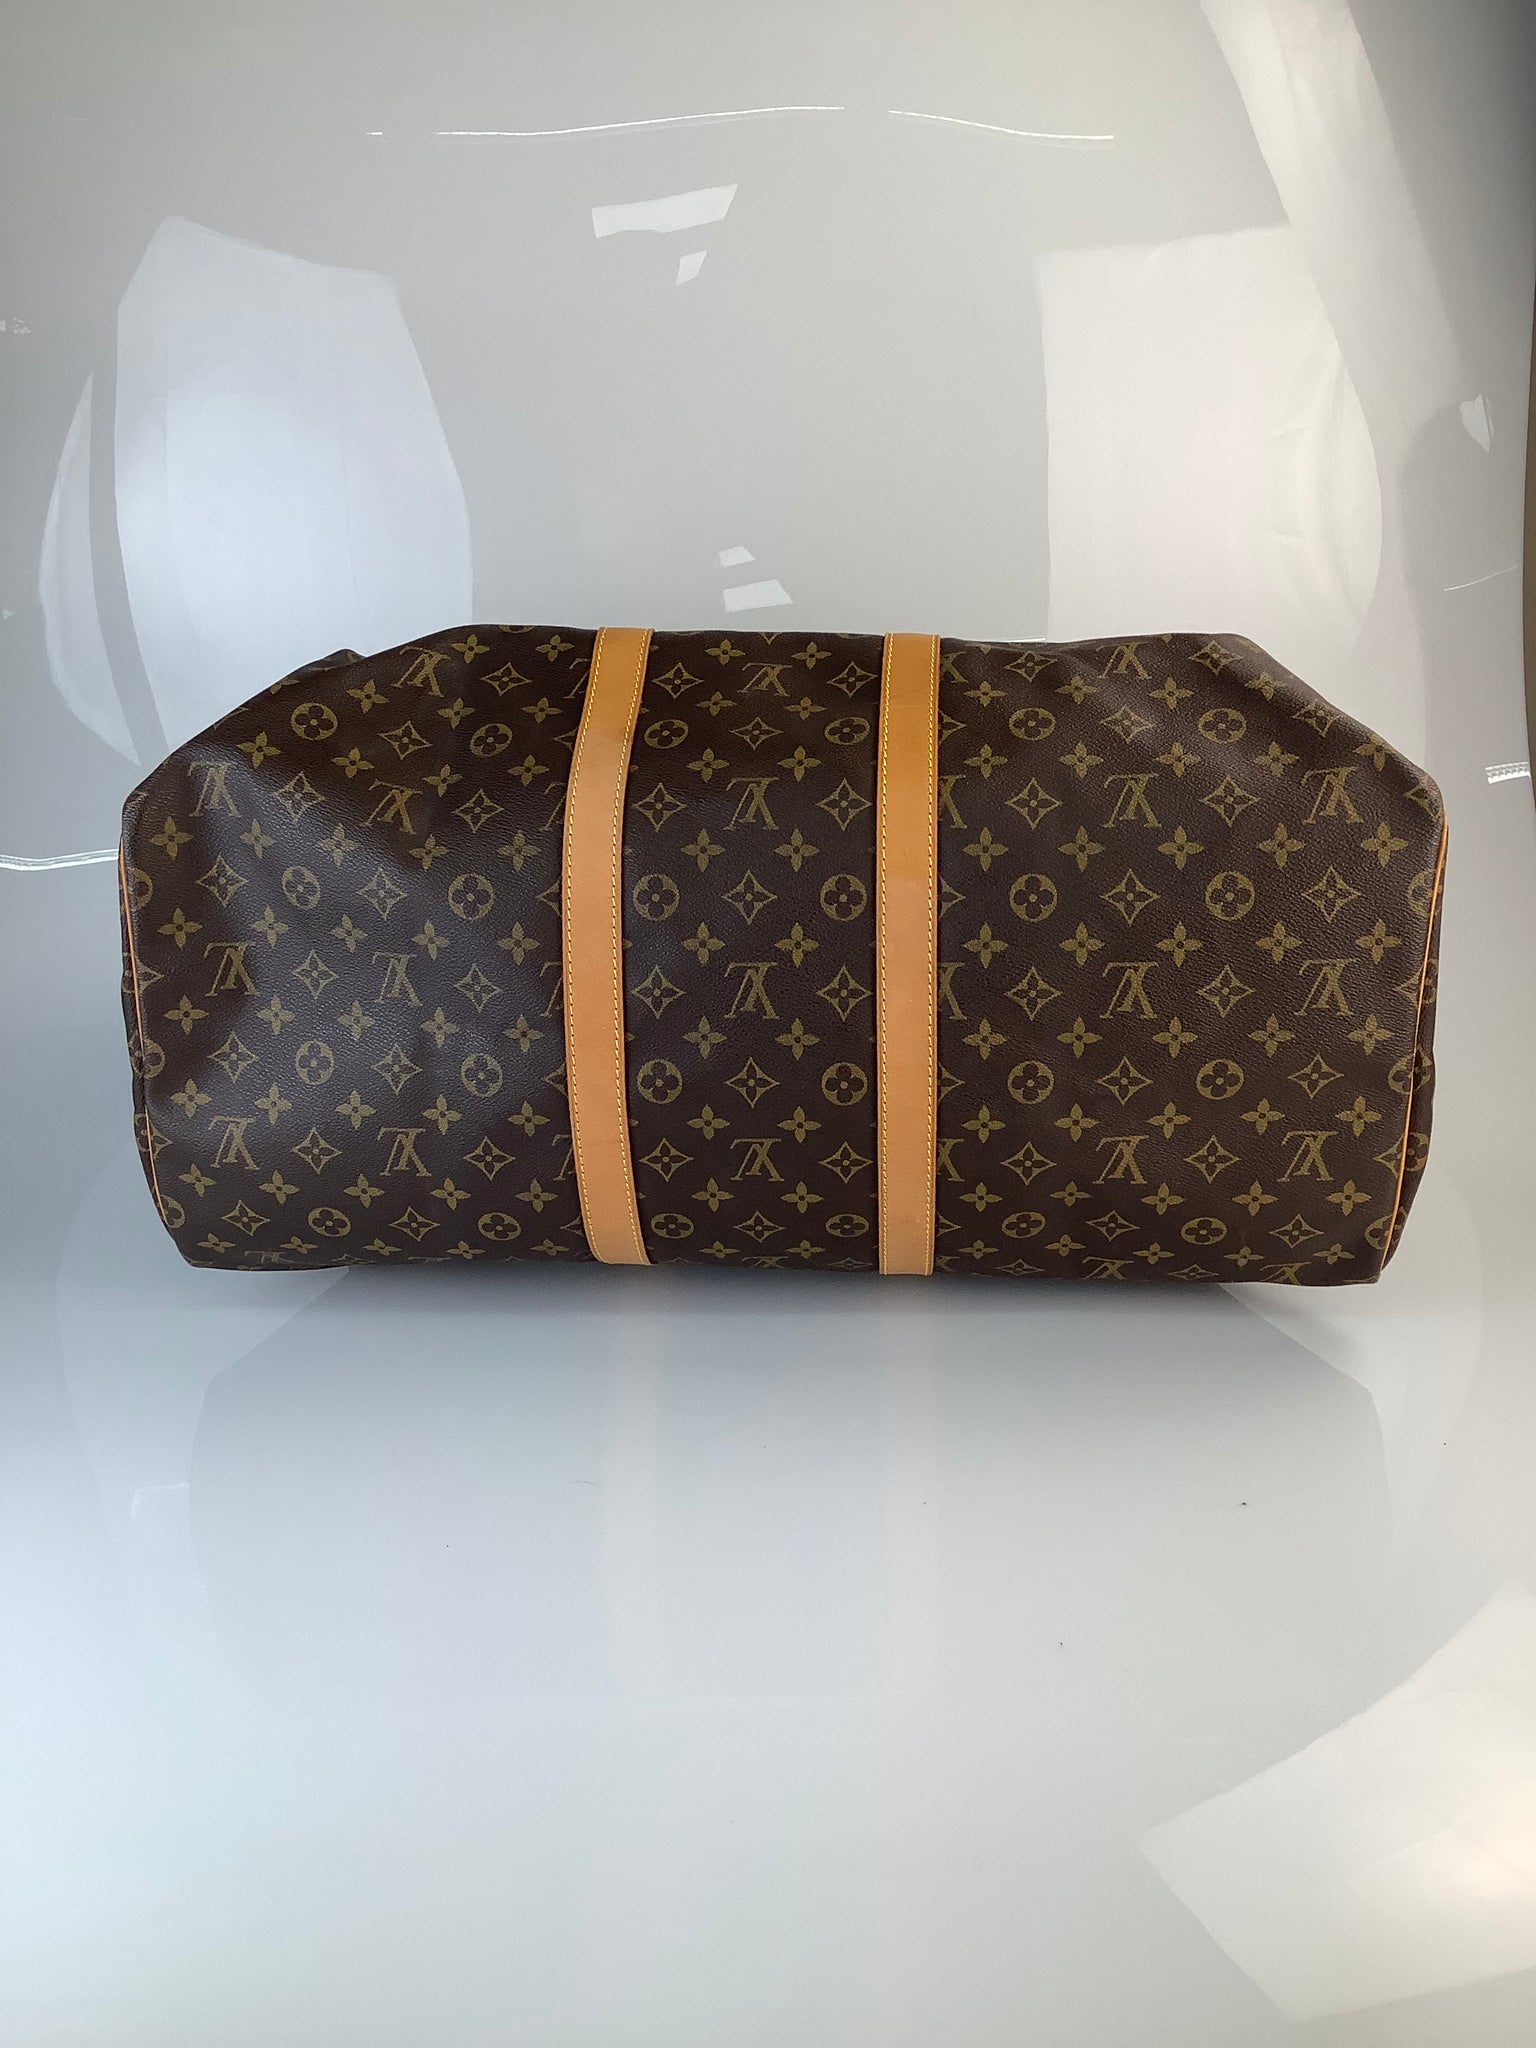 PRELOVED Louis Vuitton Keepall  55 Monogram Duffel Bag KGHVK7D 041524 B